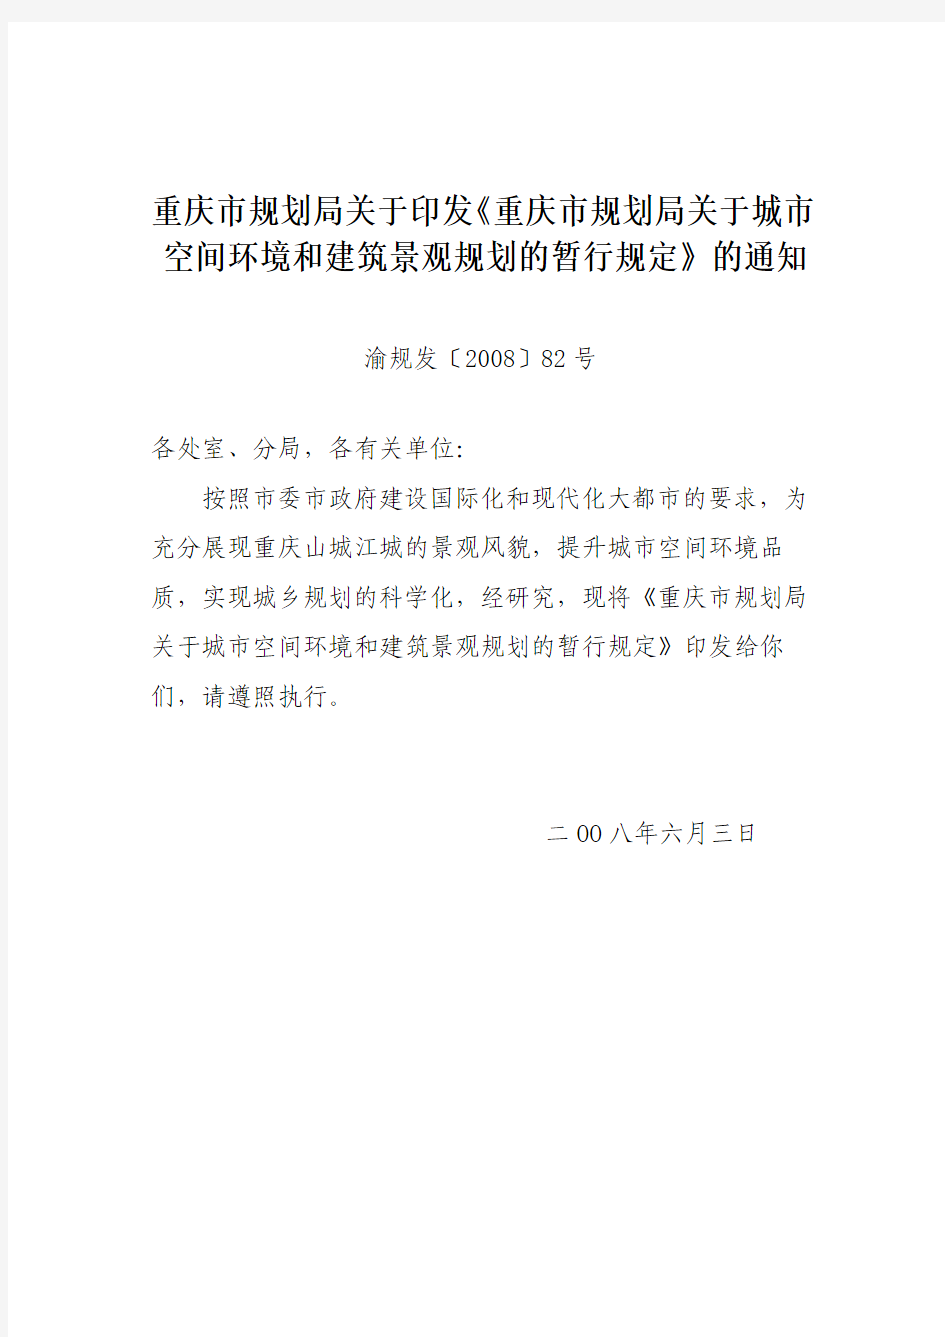 重庆市规划局关于城市空间环境和建筑景观规划的暂行规定